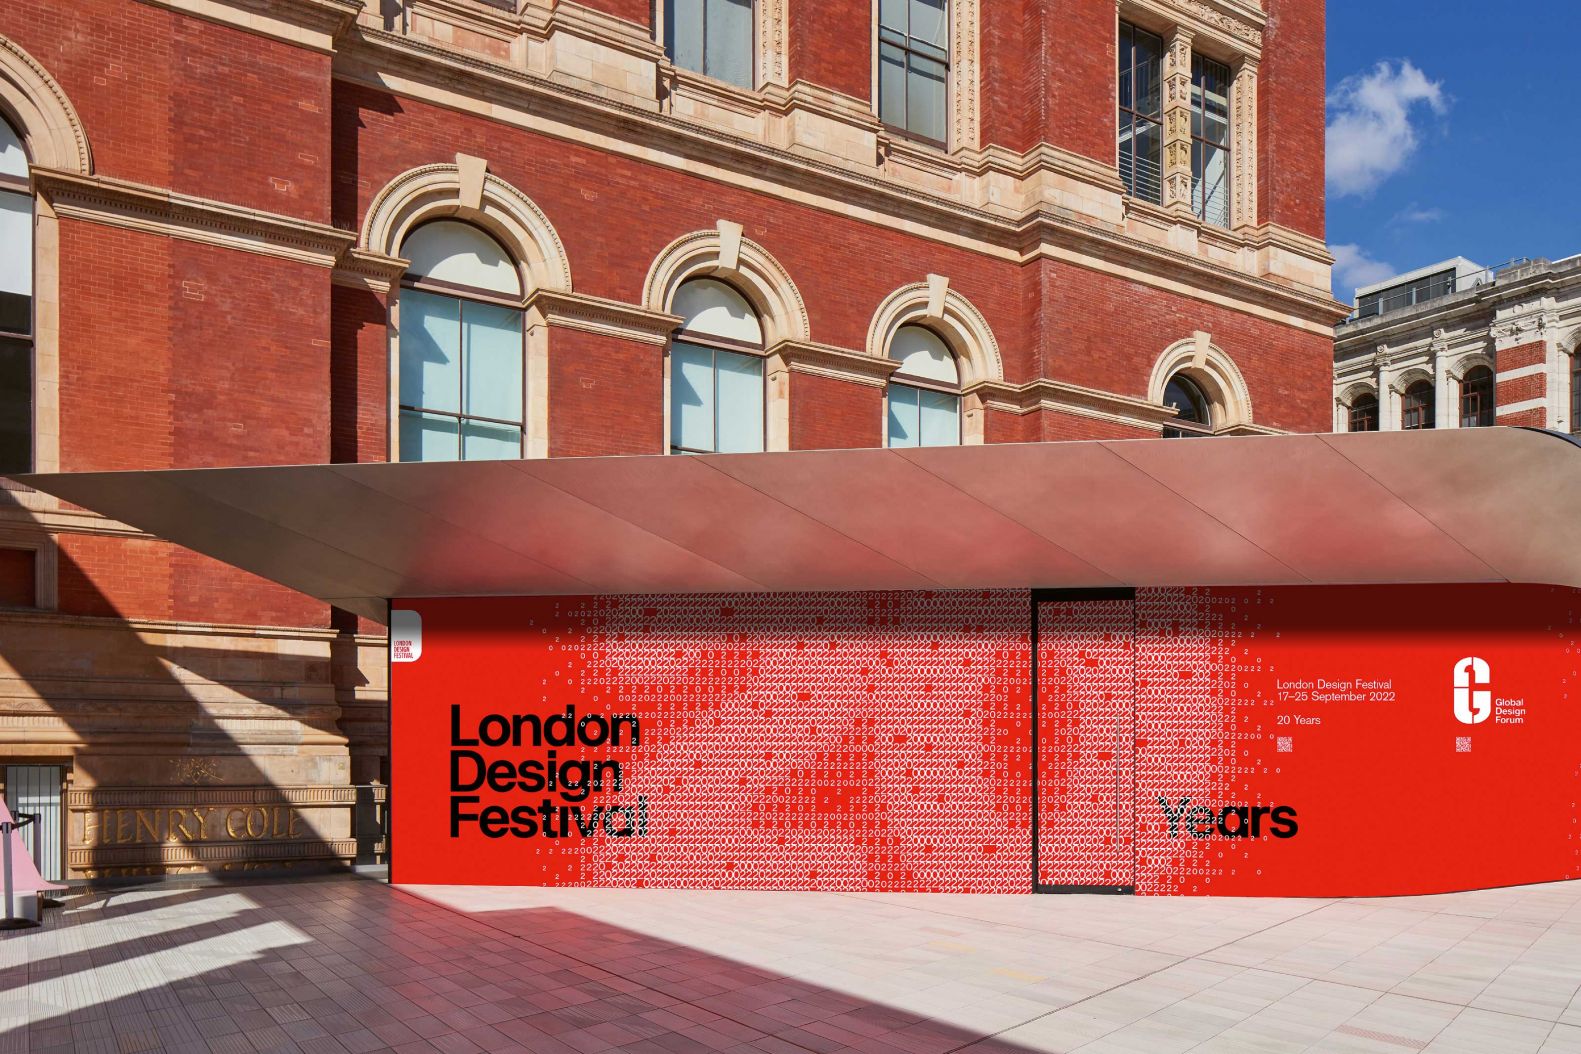 Das 2003 von Sir John Sorrell CBE und Ben Evans CBE gegründete London Design Festival feiert und fördert London als Designhauptstadt der Welt. Seit 2007 kreiert die international renommierte Kreativagentur Pentagram das Festival-Logo. Die starke, kraftvolle Grafik zum 20-jährigen Jubiläum repräsentiert das Zusammenkommen der unzähligen Designdisziplinen zu einem grossen Ganzen. londondesignfestival.com